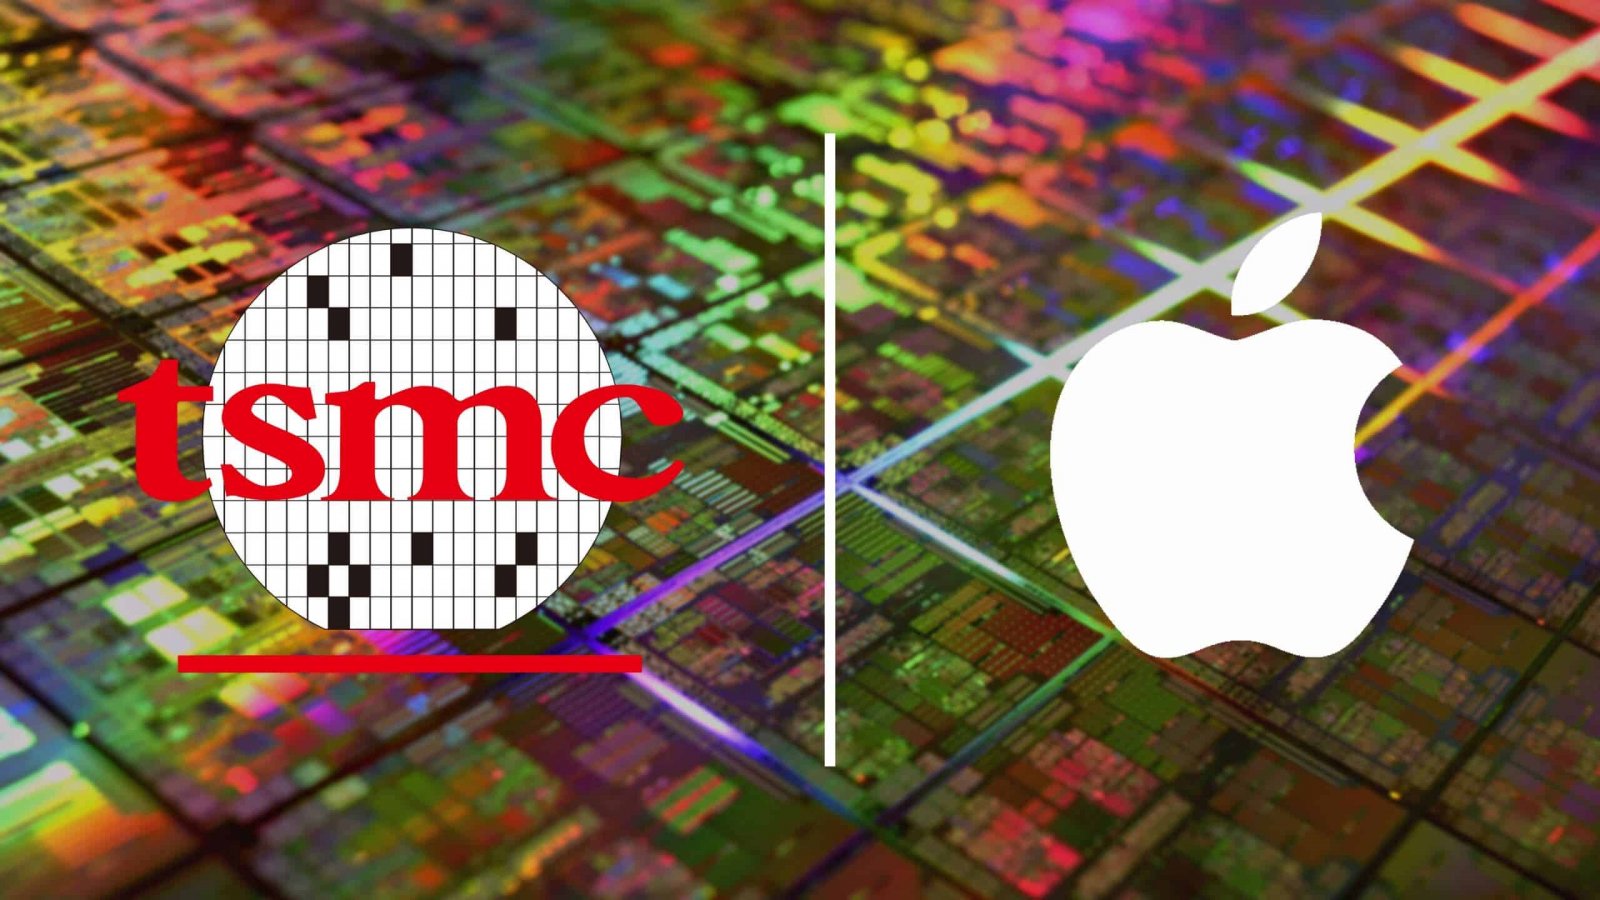 Apple al lavoro sui chip da 2 nanometri: aumento di prezzo in vista per i prossimi iPhone e Mac?